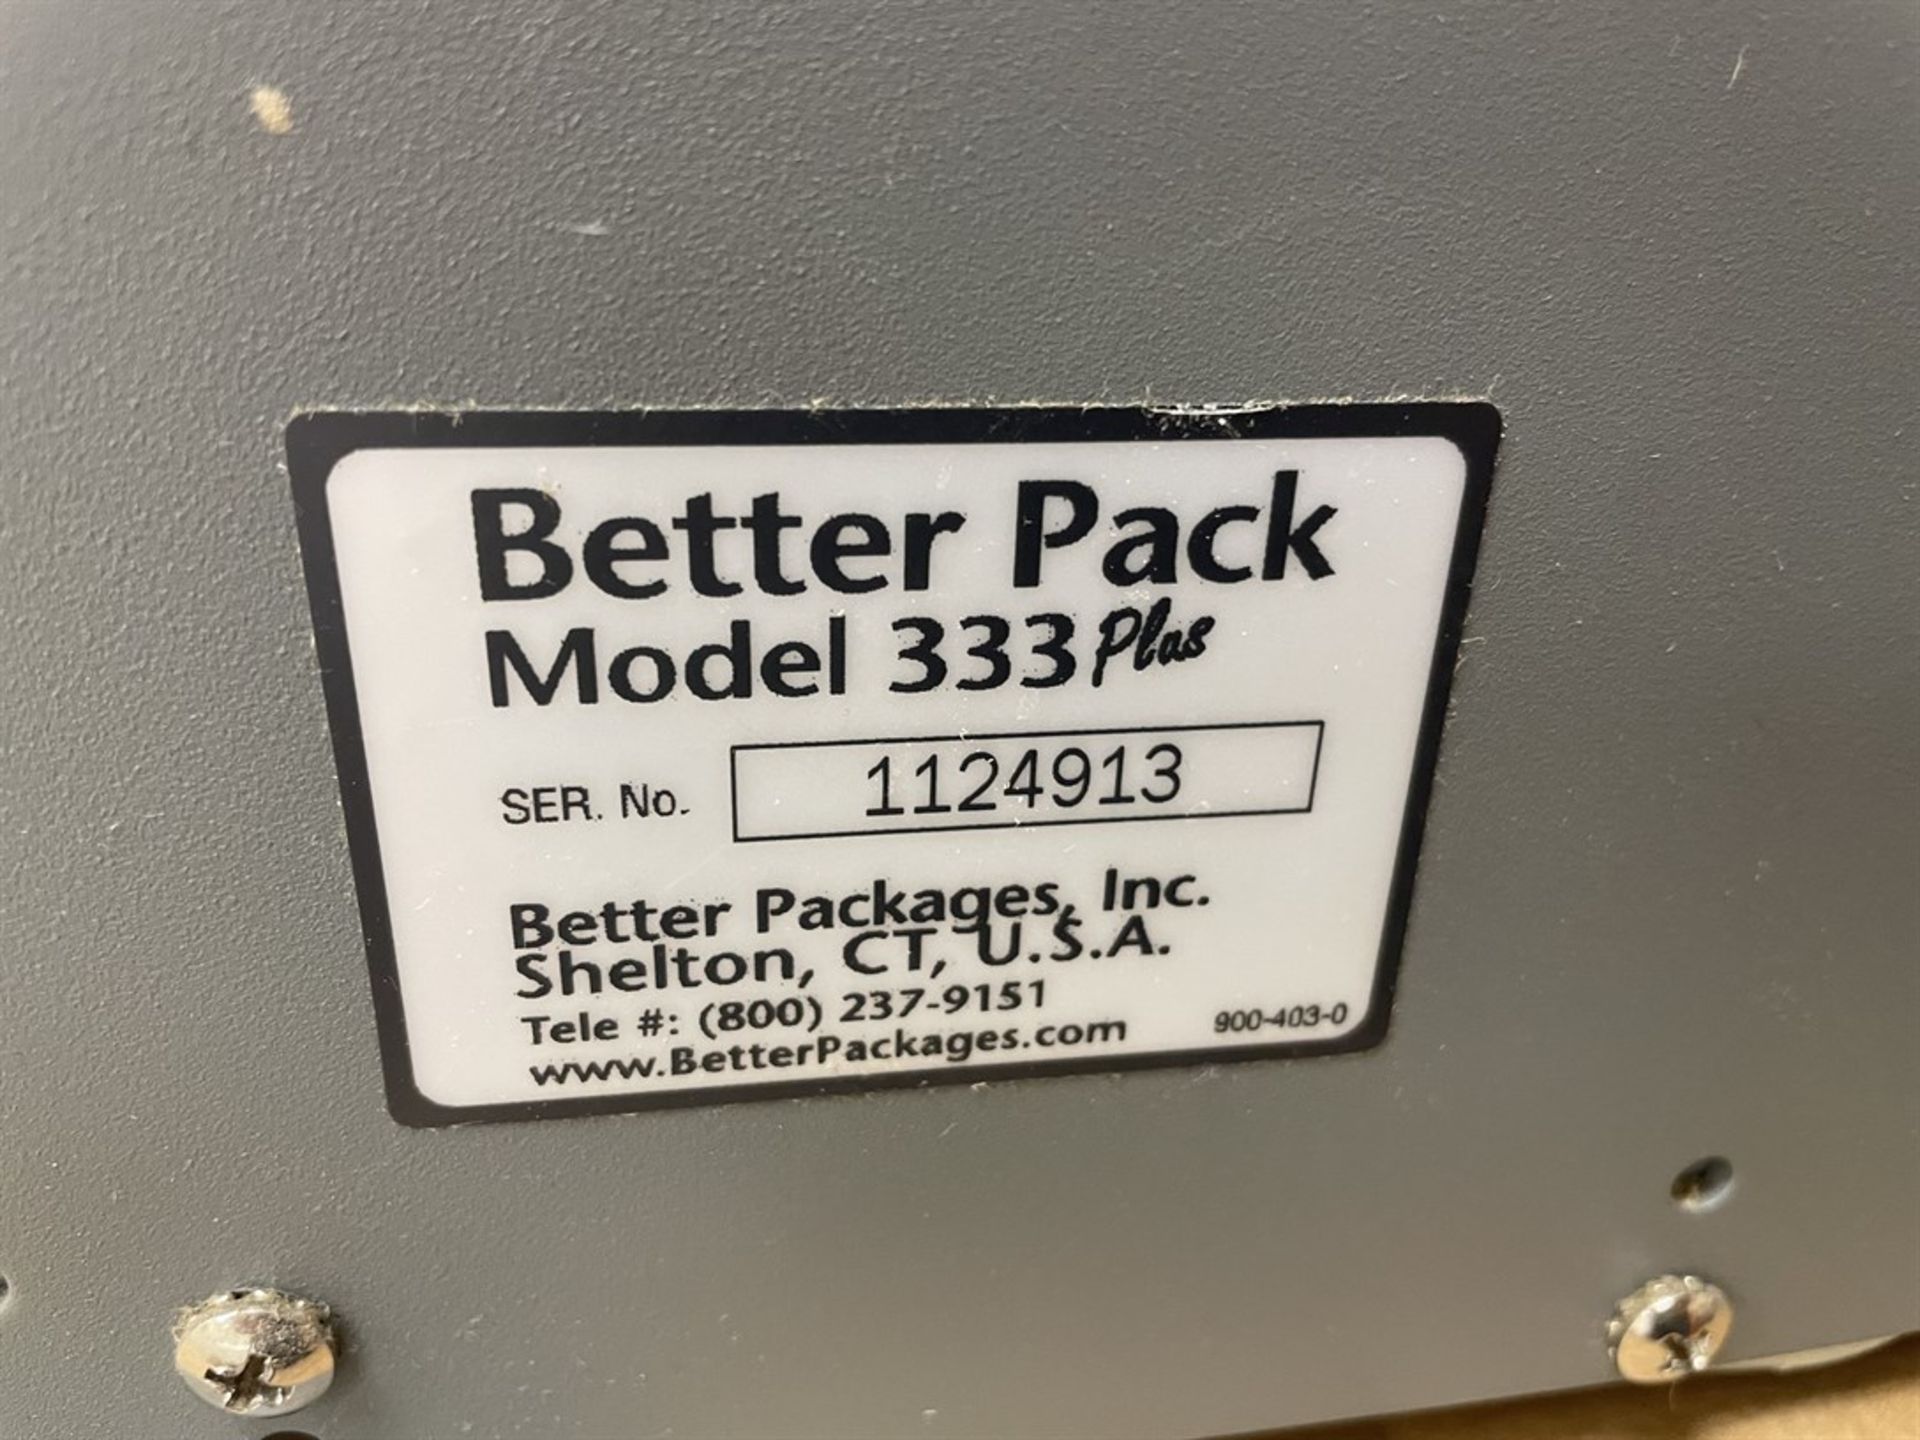 Better Pack 333 Plus Tape dispenser. s/n 1124913 - Image 2 of 2